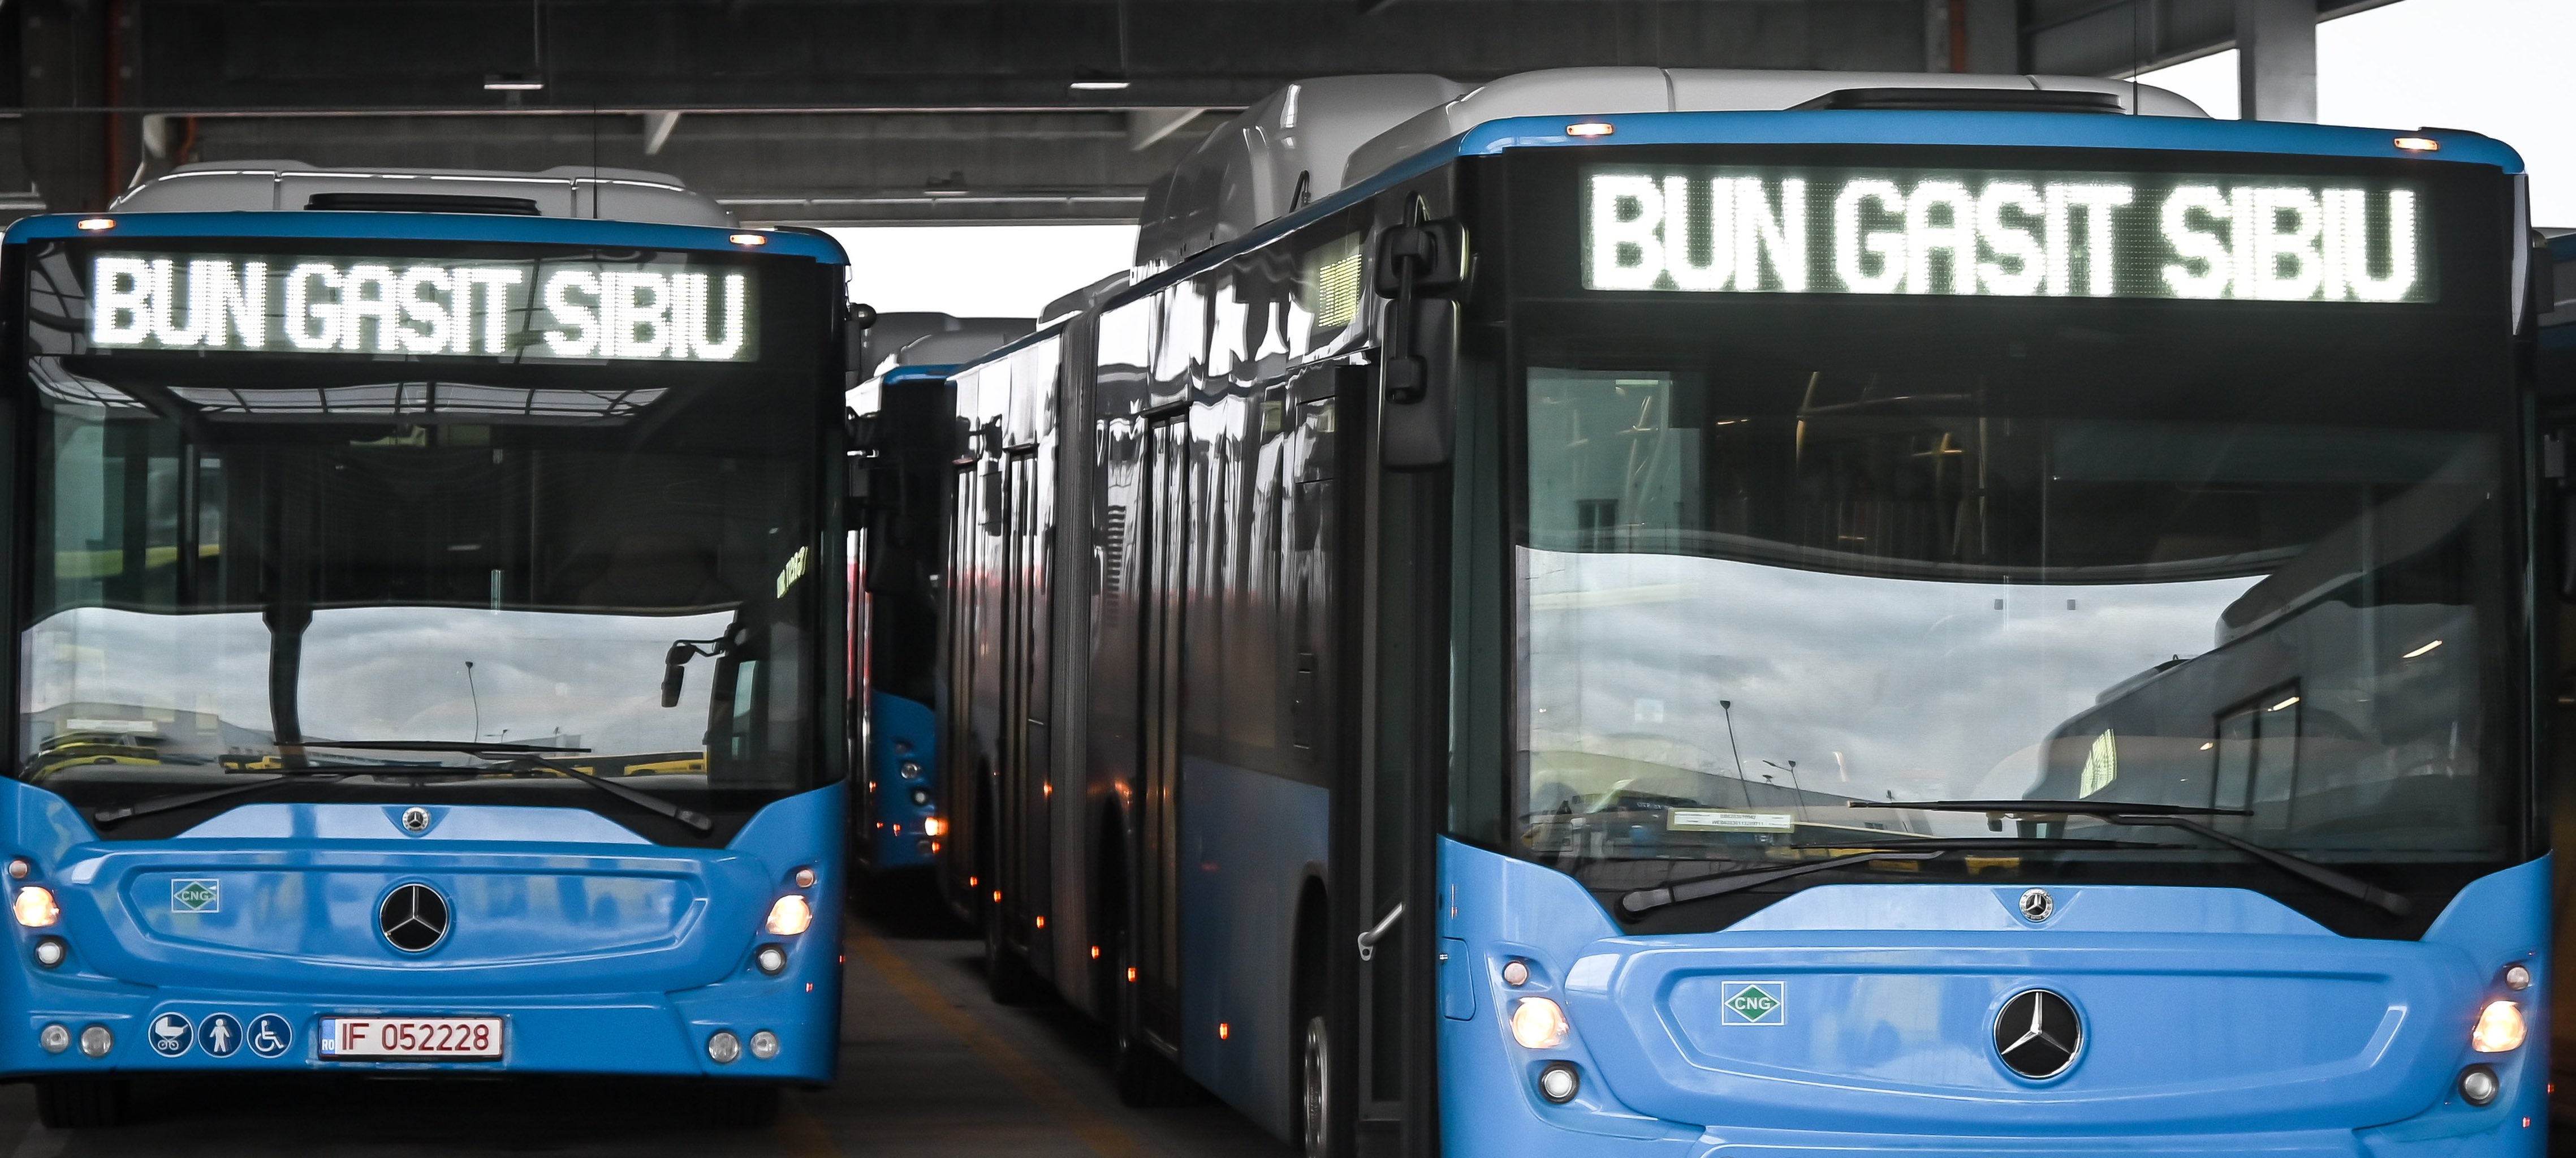 Cadou de Paști: Tursib scoate pe trasee noile autobuze Mercedes. Plus afișaj nou în stații